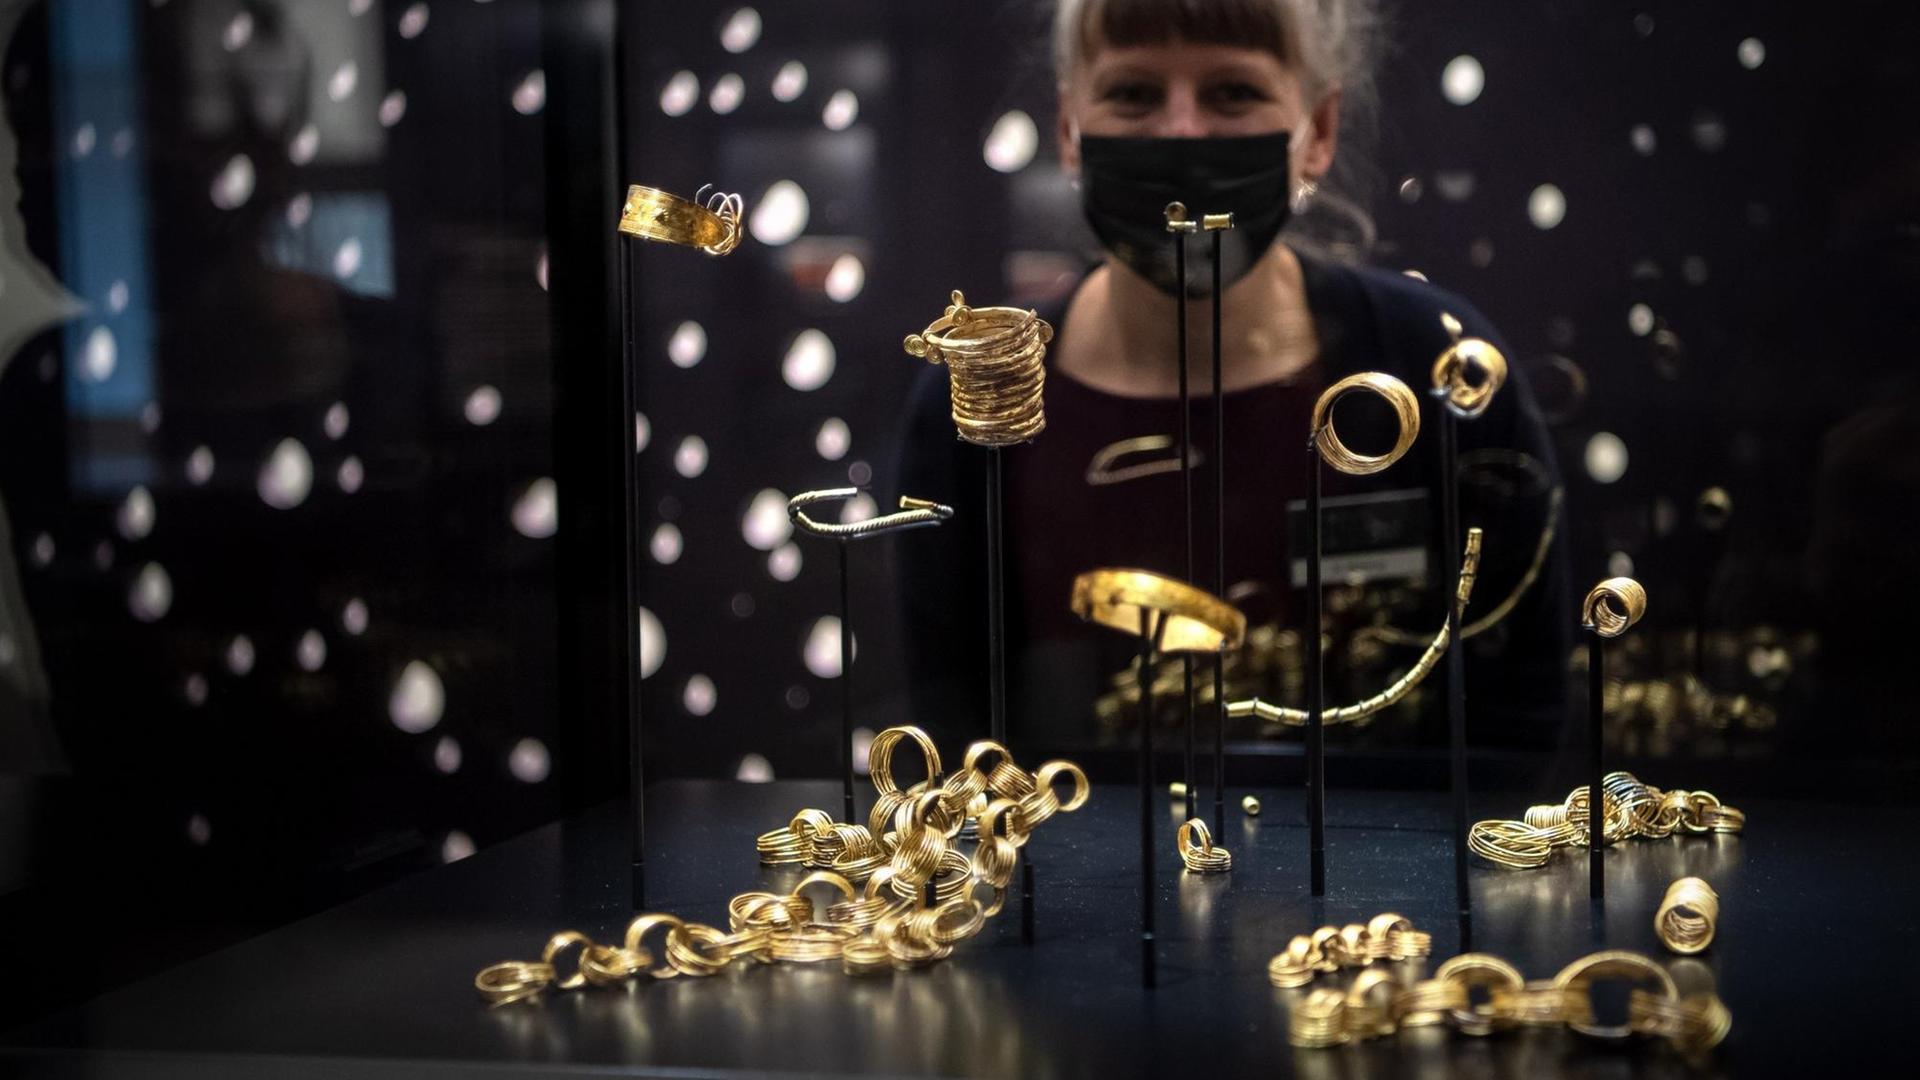 Eine Frau mit Mund-Nasen-Schutz steht im Kreismuseum Syke hinter einer Vitrine, in welcher der Goldhort von Gessel ausgestellt ist (gestellte Szene).